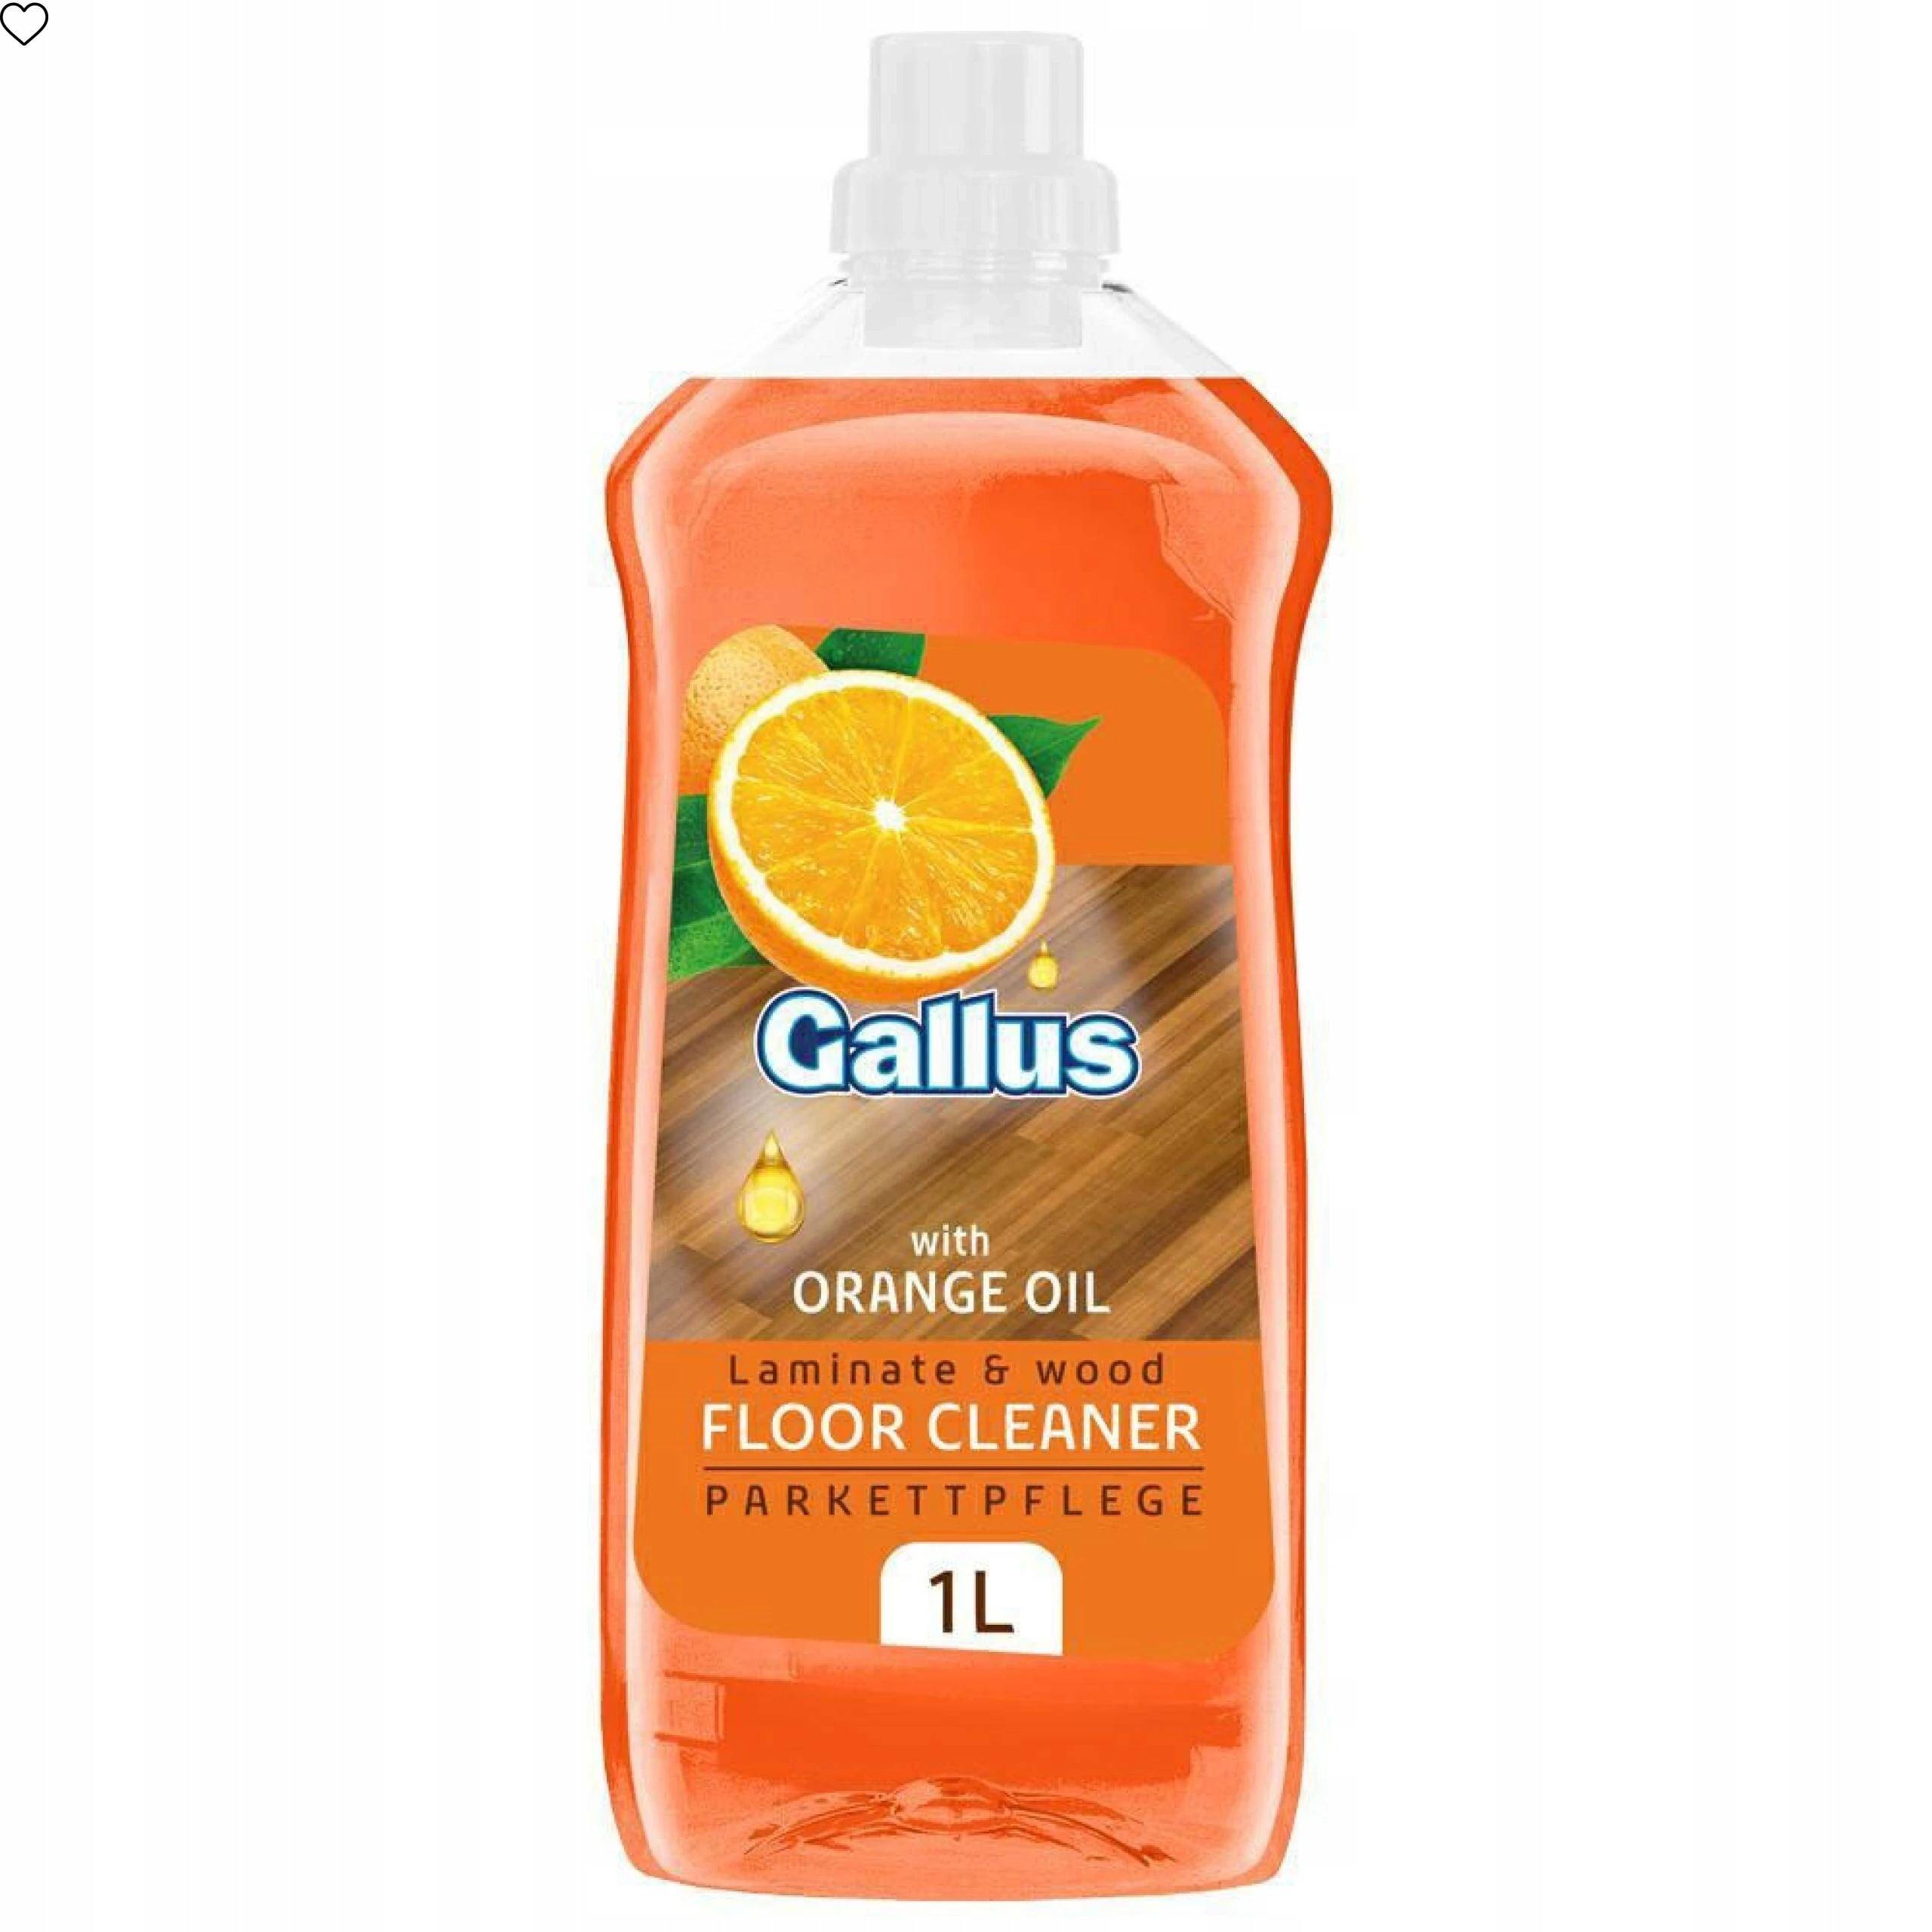 GALLUS 1L PŁYN UNIVERSALNY olejkiem pomarańczowym